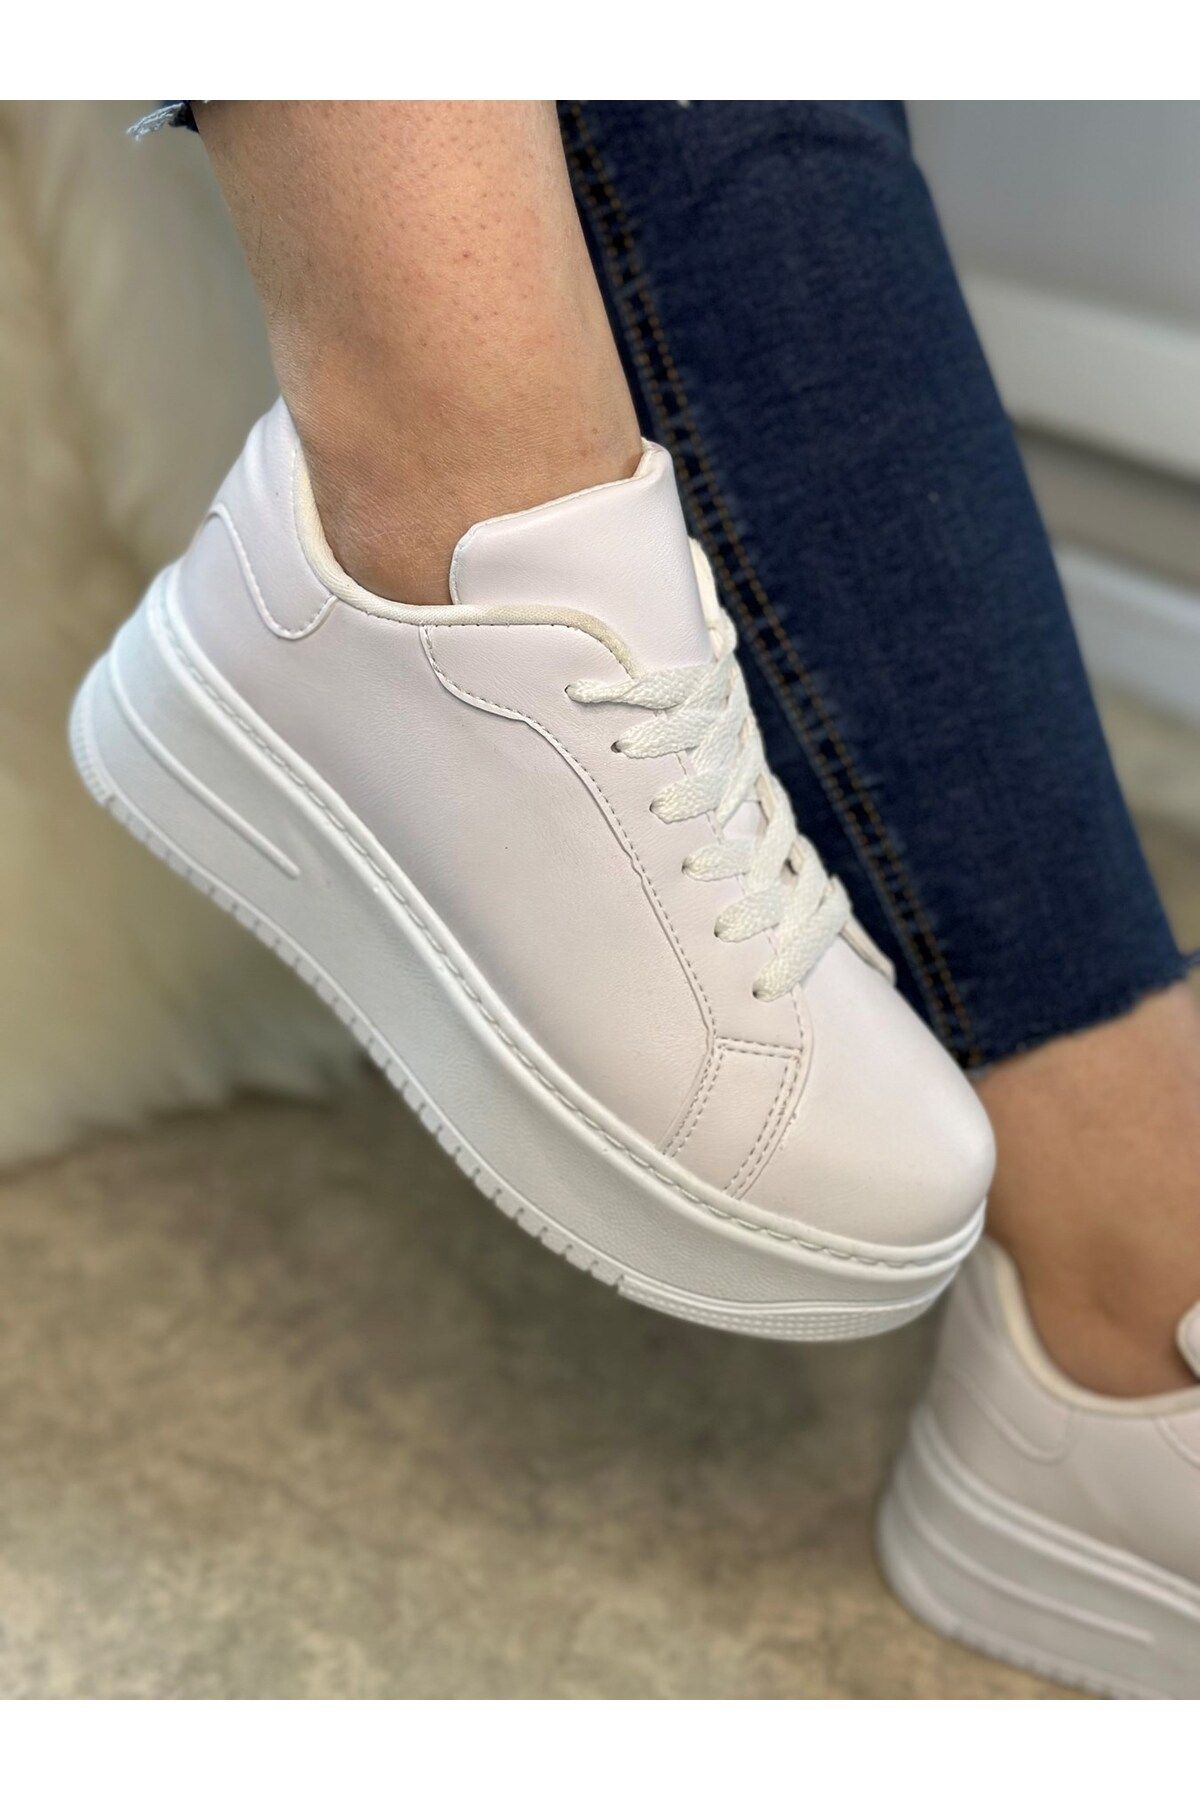 İmerShoes Günlük Kadın Beyaz Sneaker Bağcıklı Hafif Kalın Yüksek Tabanlı Yürüyüş Spor Ayakkabı 060